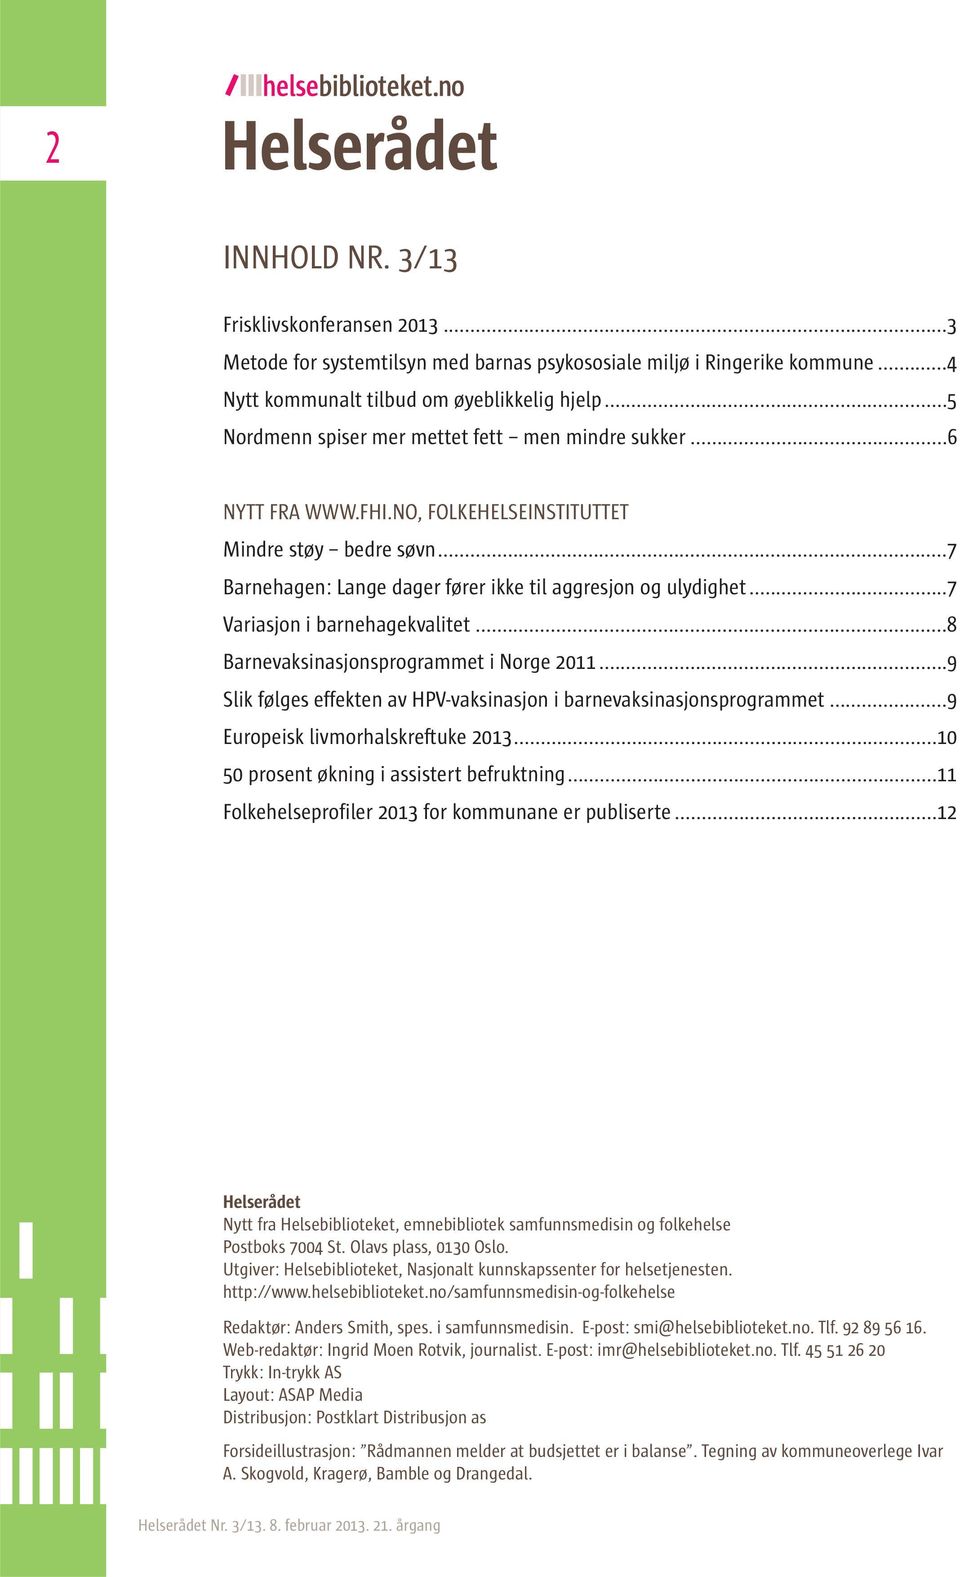 ..7 Variasjon i barnehagekvalitet...8 Barnevaksinasjonsprogrammet i Norge 2011...9 Slik følges effekten av HPV-vaksinasjon i barnevaksinasjonsprogrammet...9 Europeisk livmorhalskreftuke 2013.